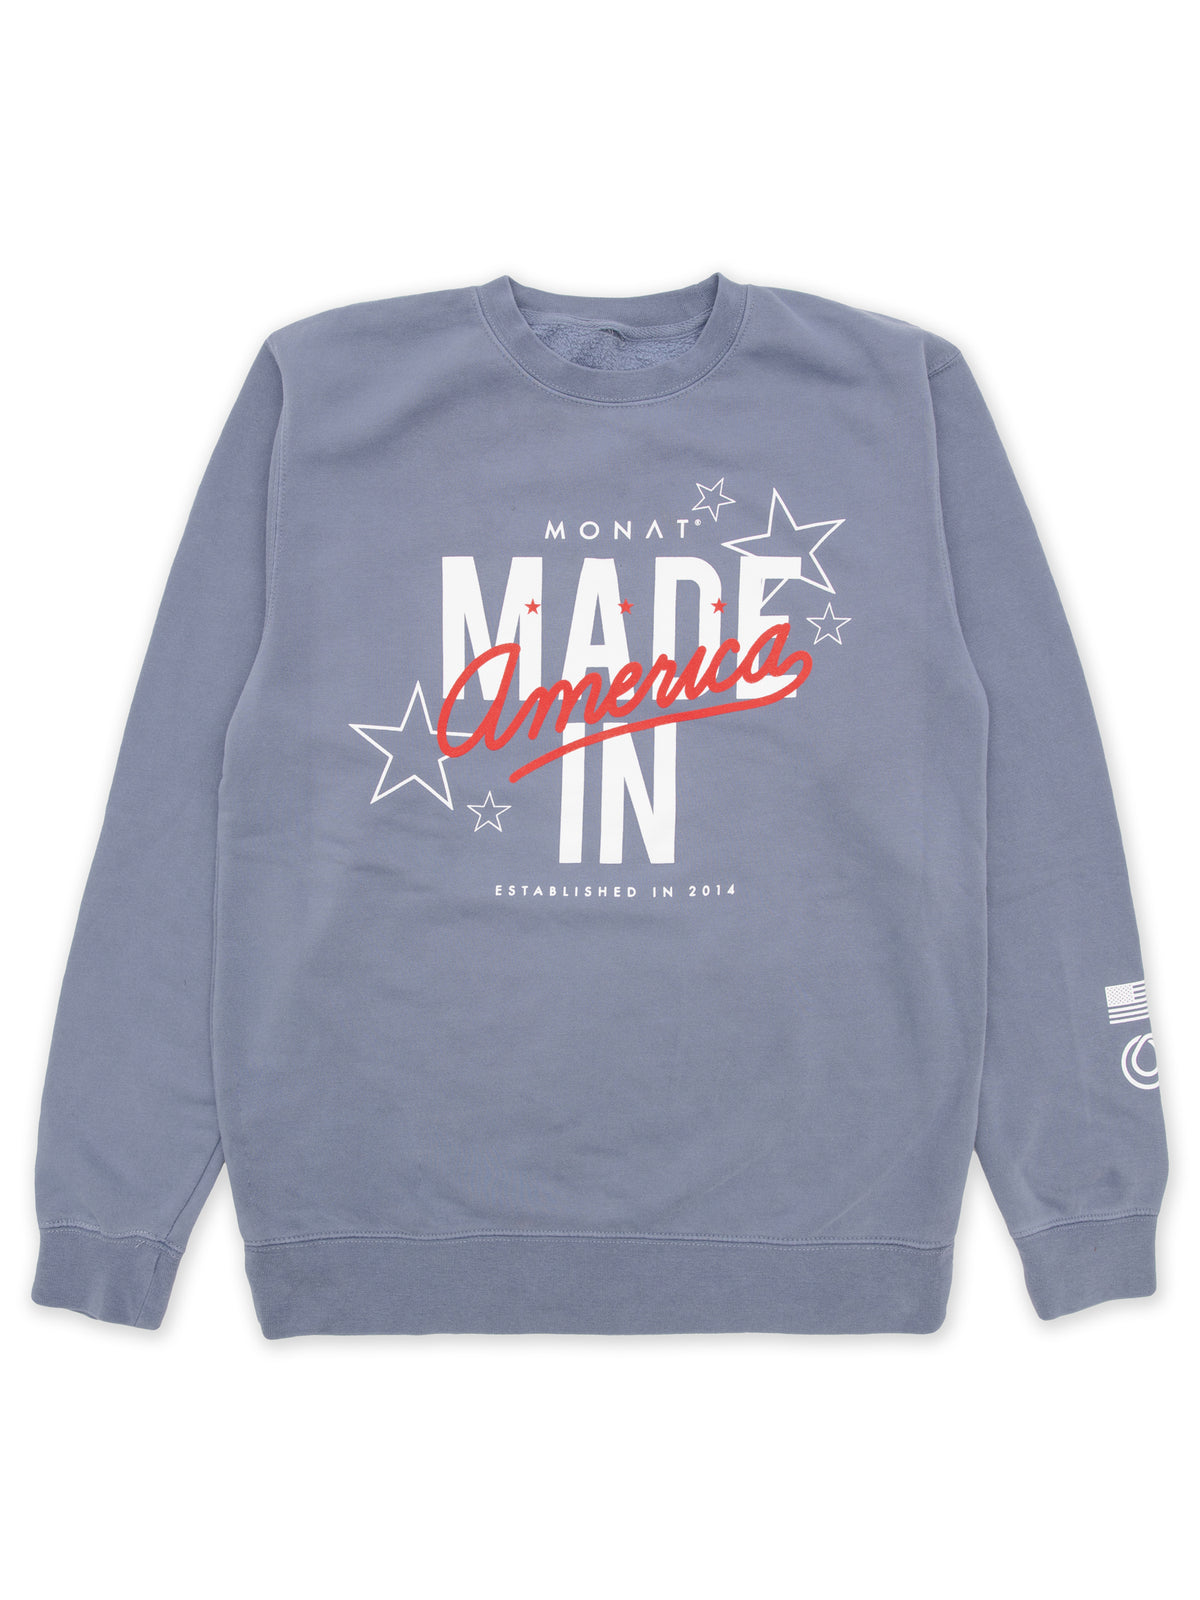 Monat Made In America Sweatshirt by Monat Gear